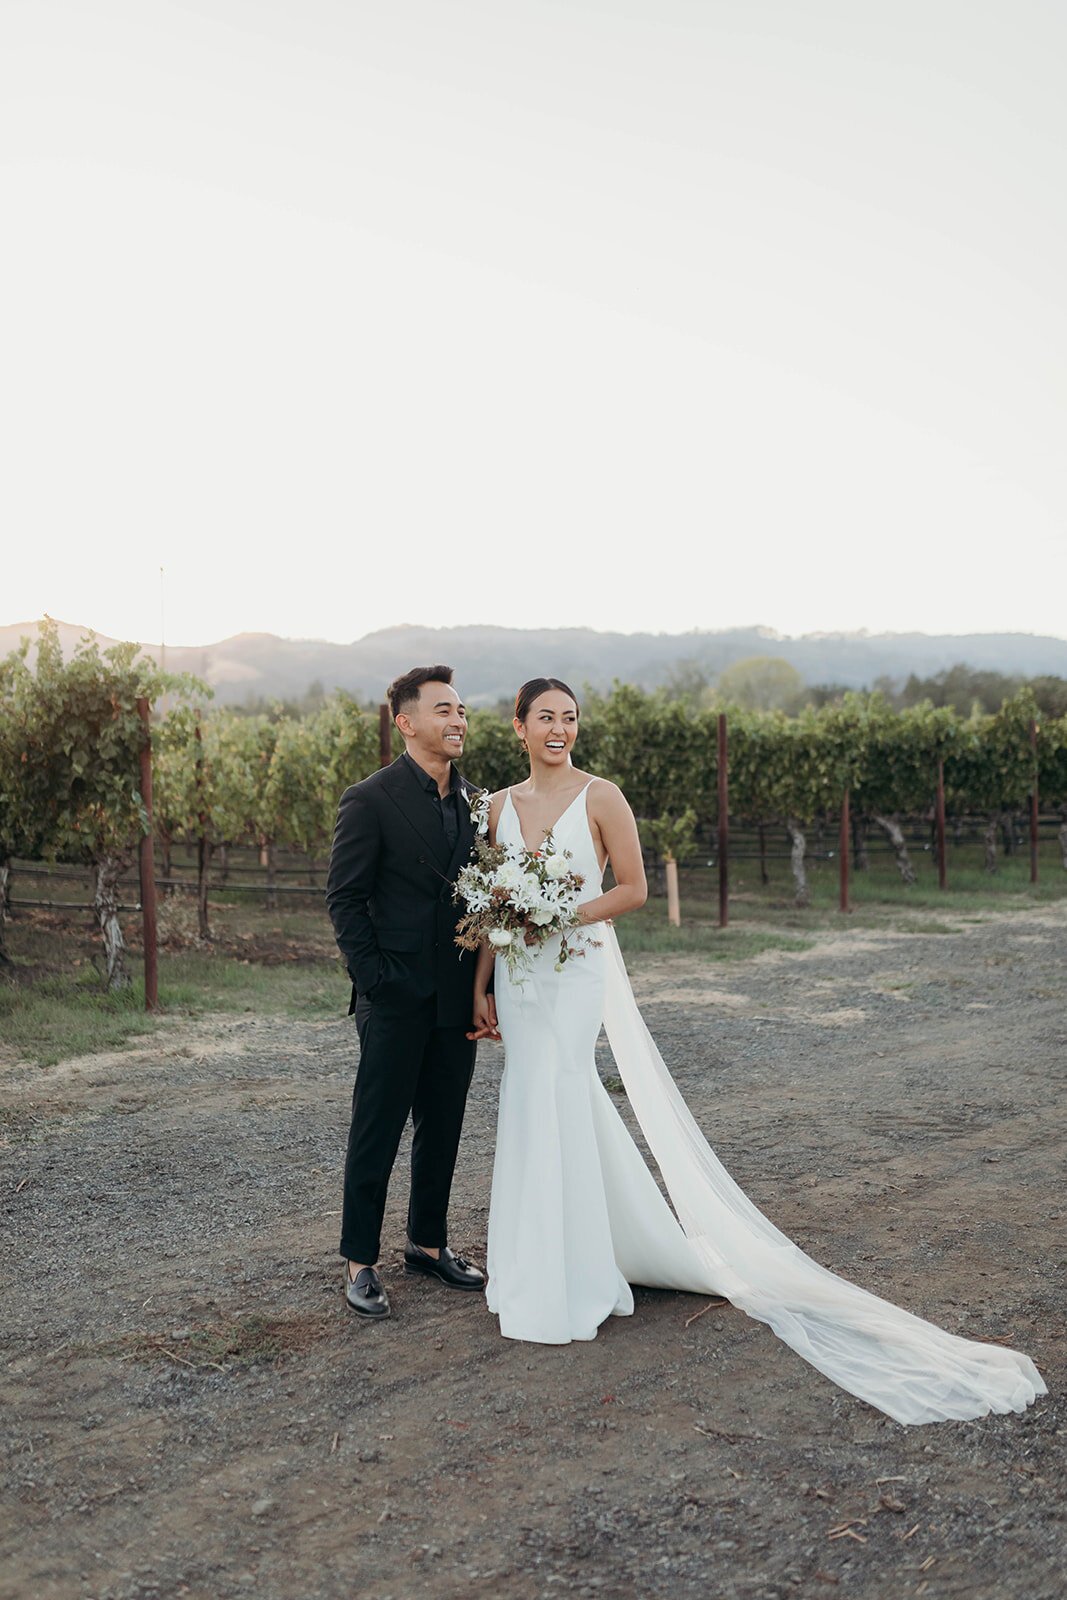 Groom and bride posing in vineyard venue